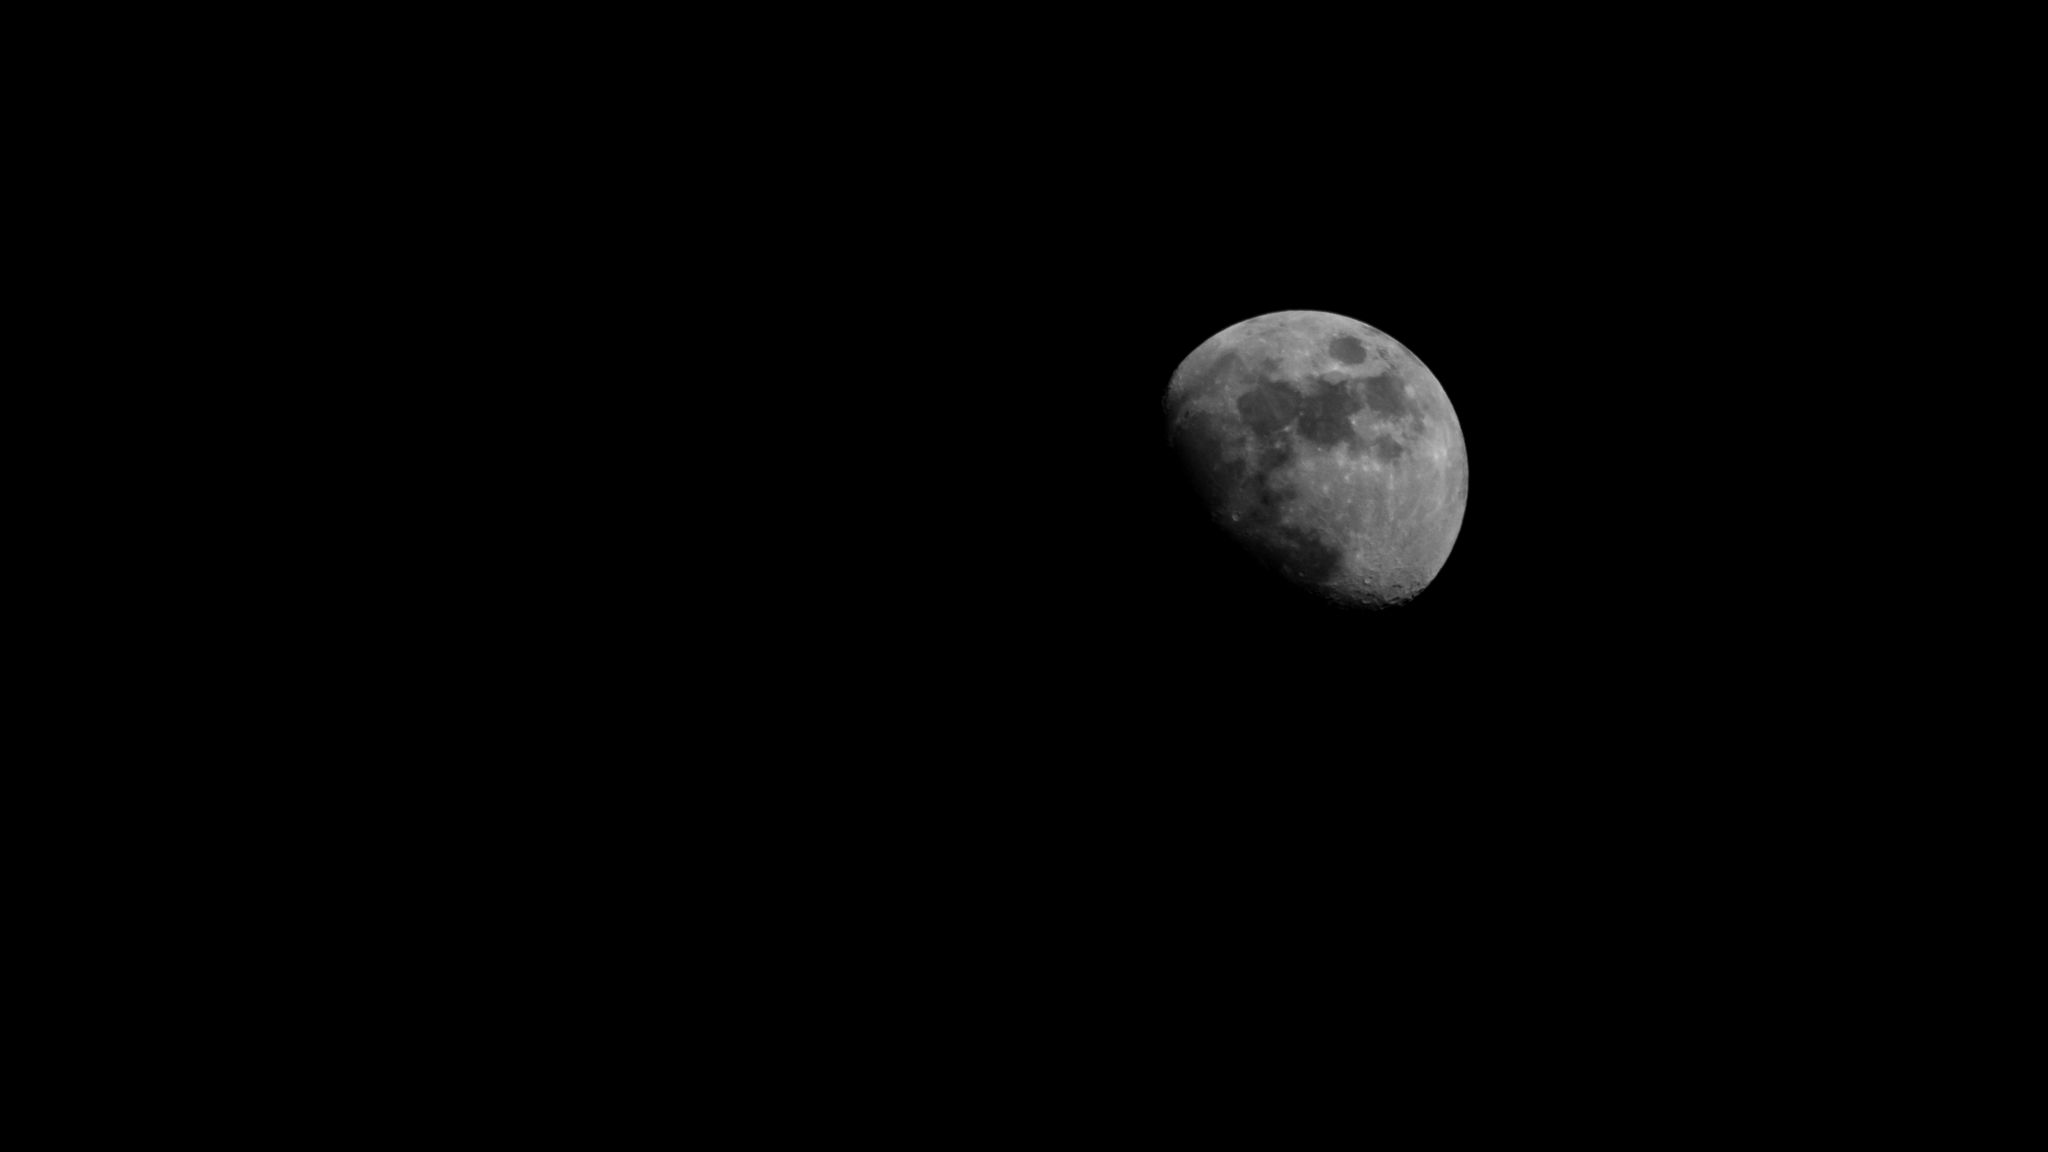 Mặt trăng luôn có sức lôi cuốn đặc biệt đến mọi người. Hãy cùng chúng tôi khám phá các hình ảnh đẹp của mặt trăng để cảm nhận sự lãng mạn và trầm lắng.